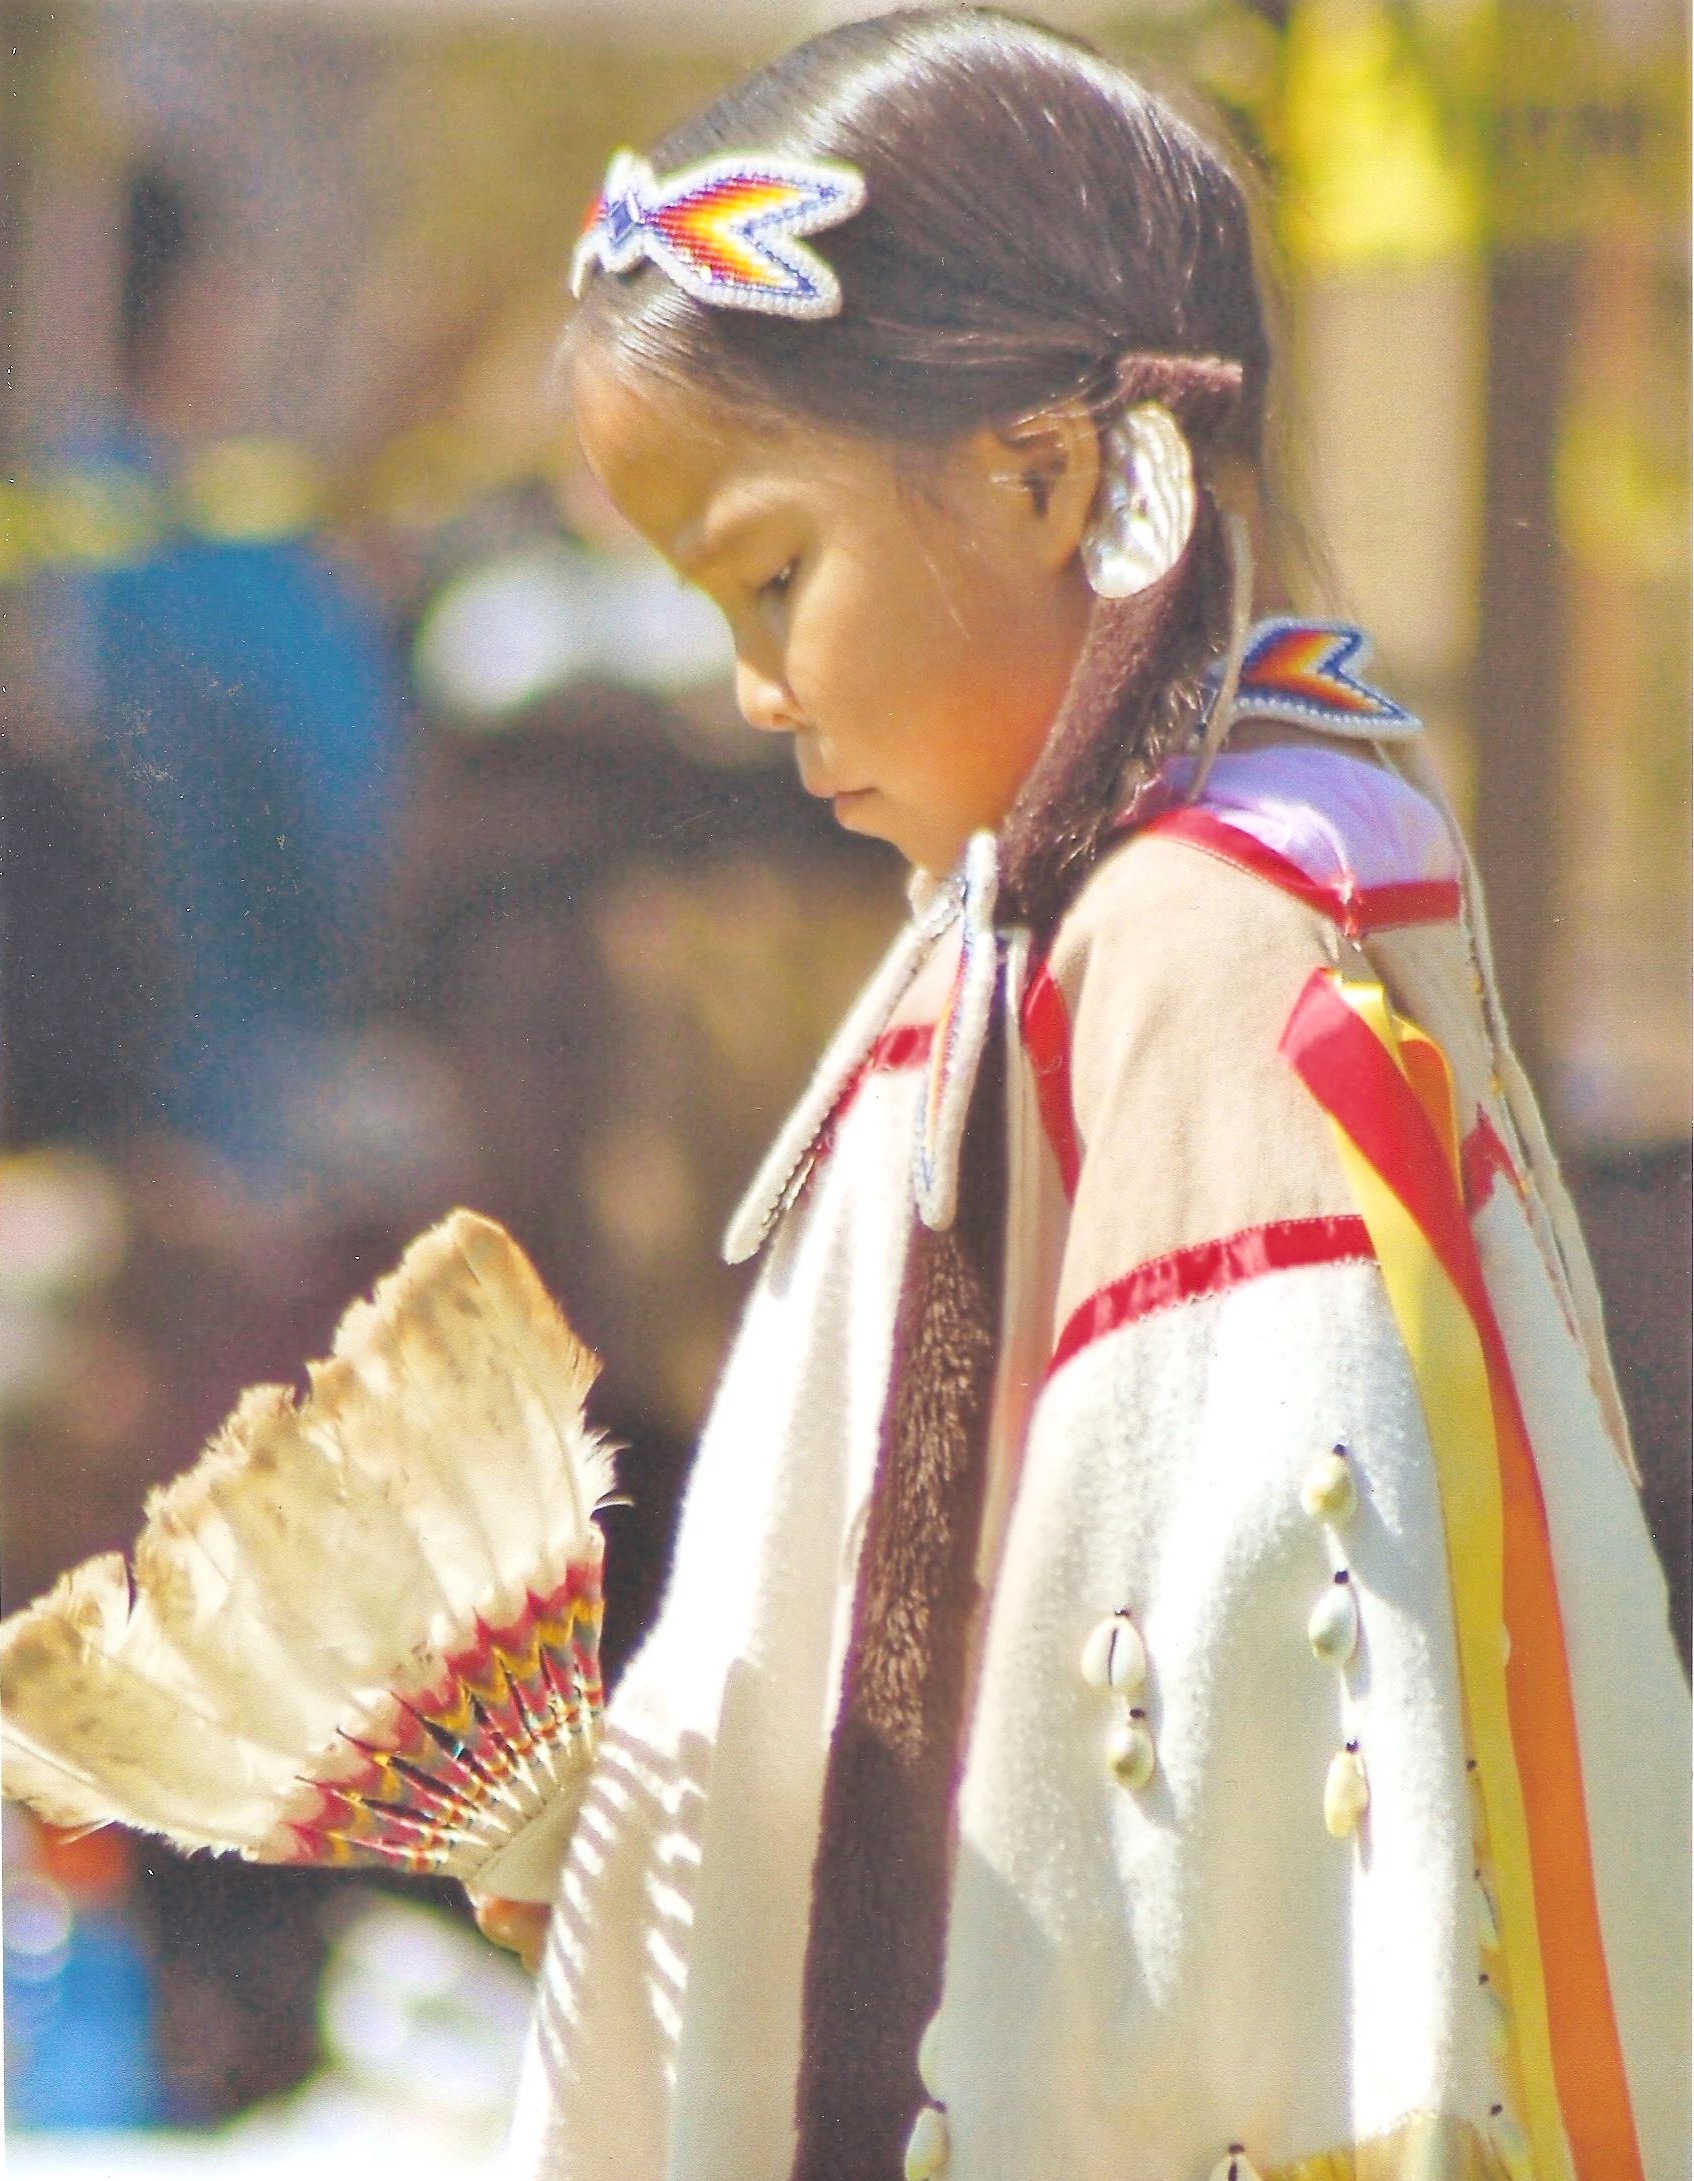 American Indian Girl